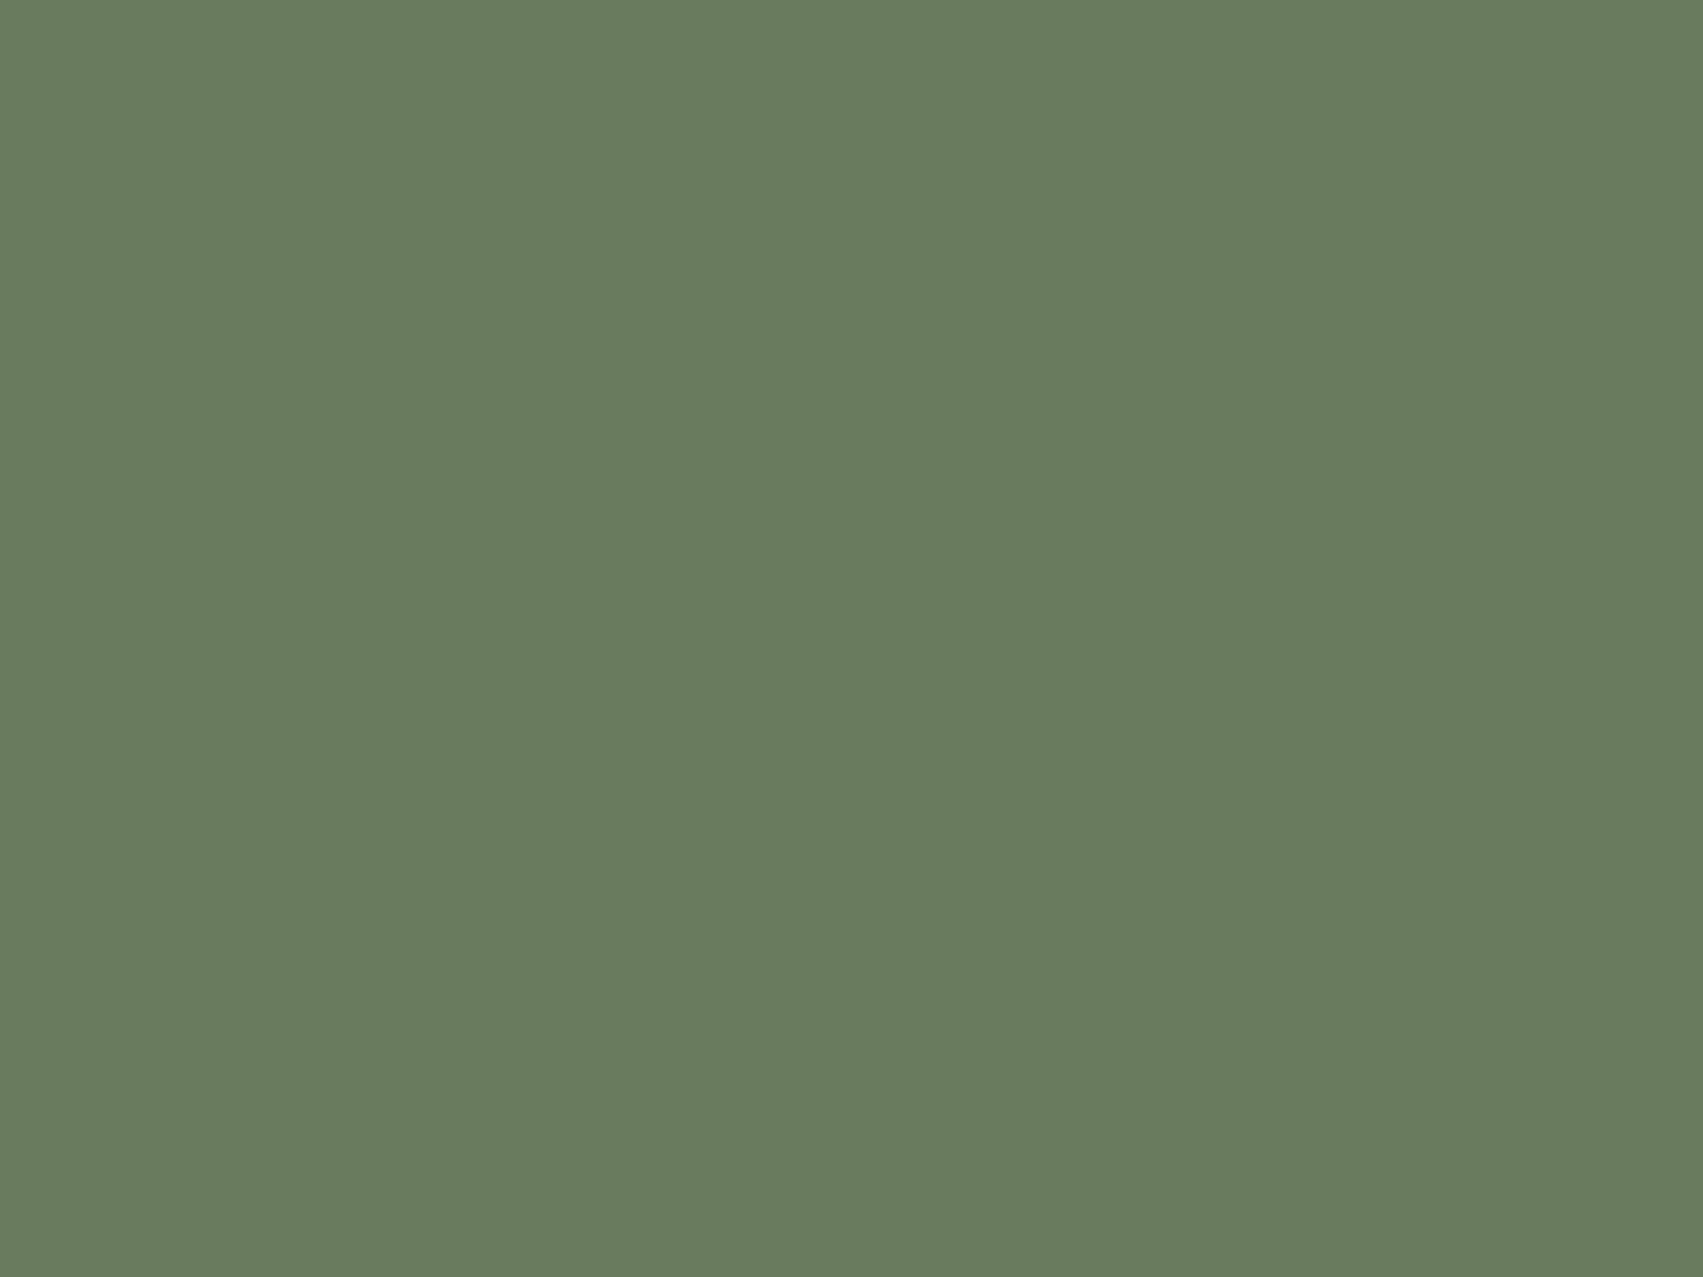 Михаил Ларионов. Розовый куст после дождя (фрагмент). 1904. Государственный Русский музей, Санкт-Петербург